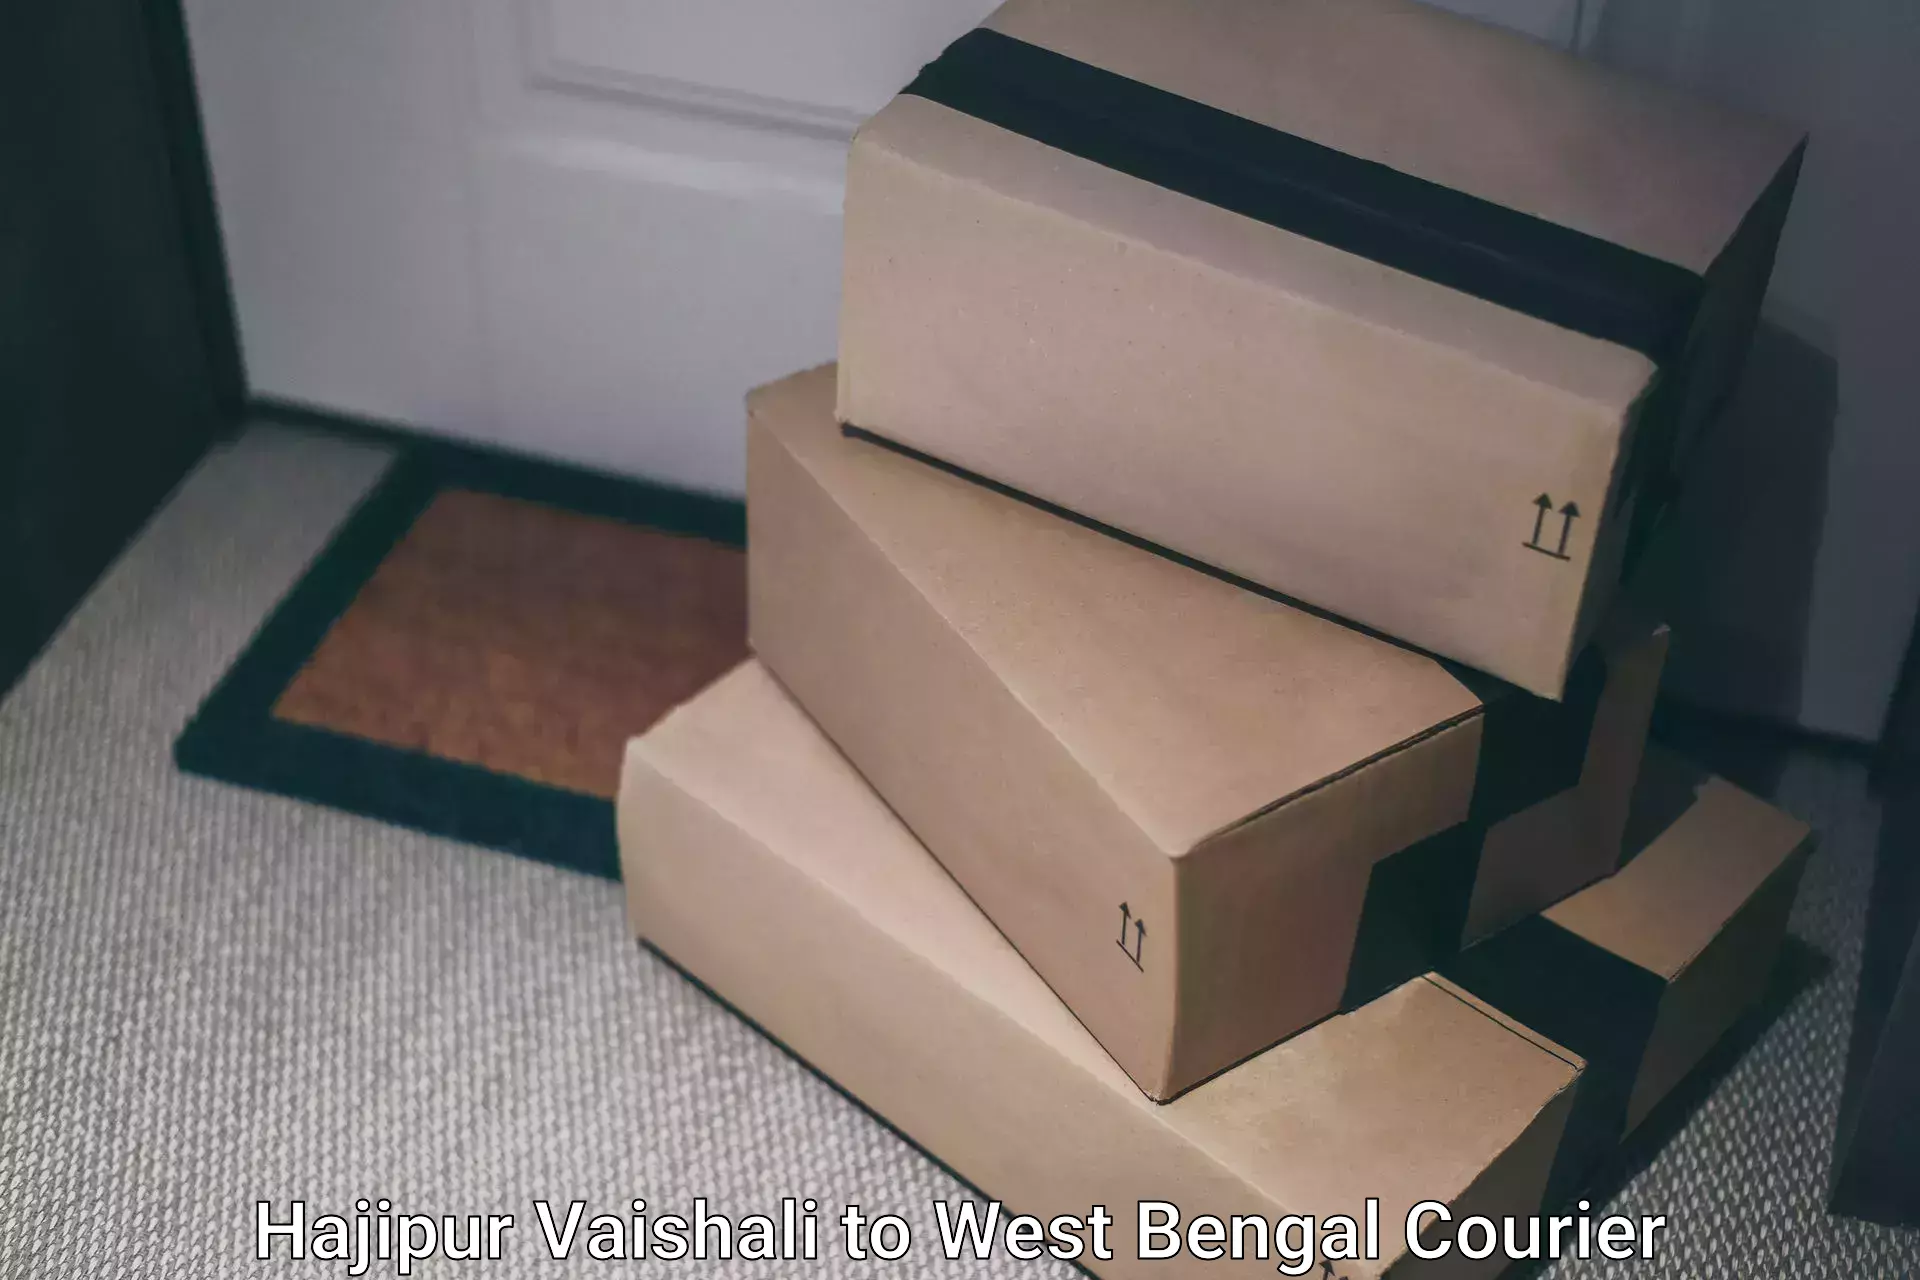 Speedy delivery service Hajipur Vaishali to Algarah